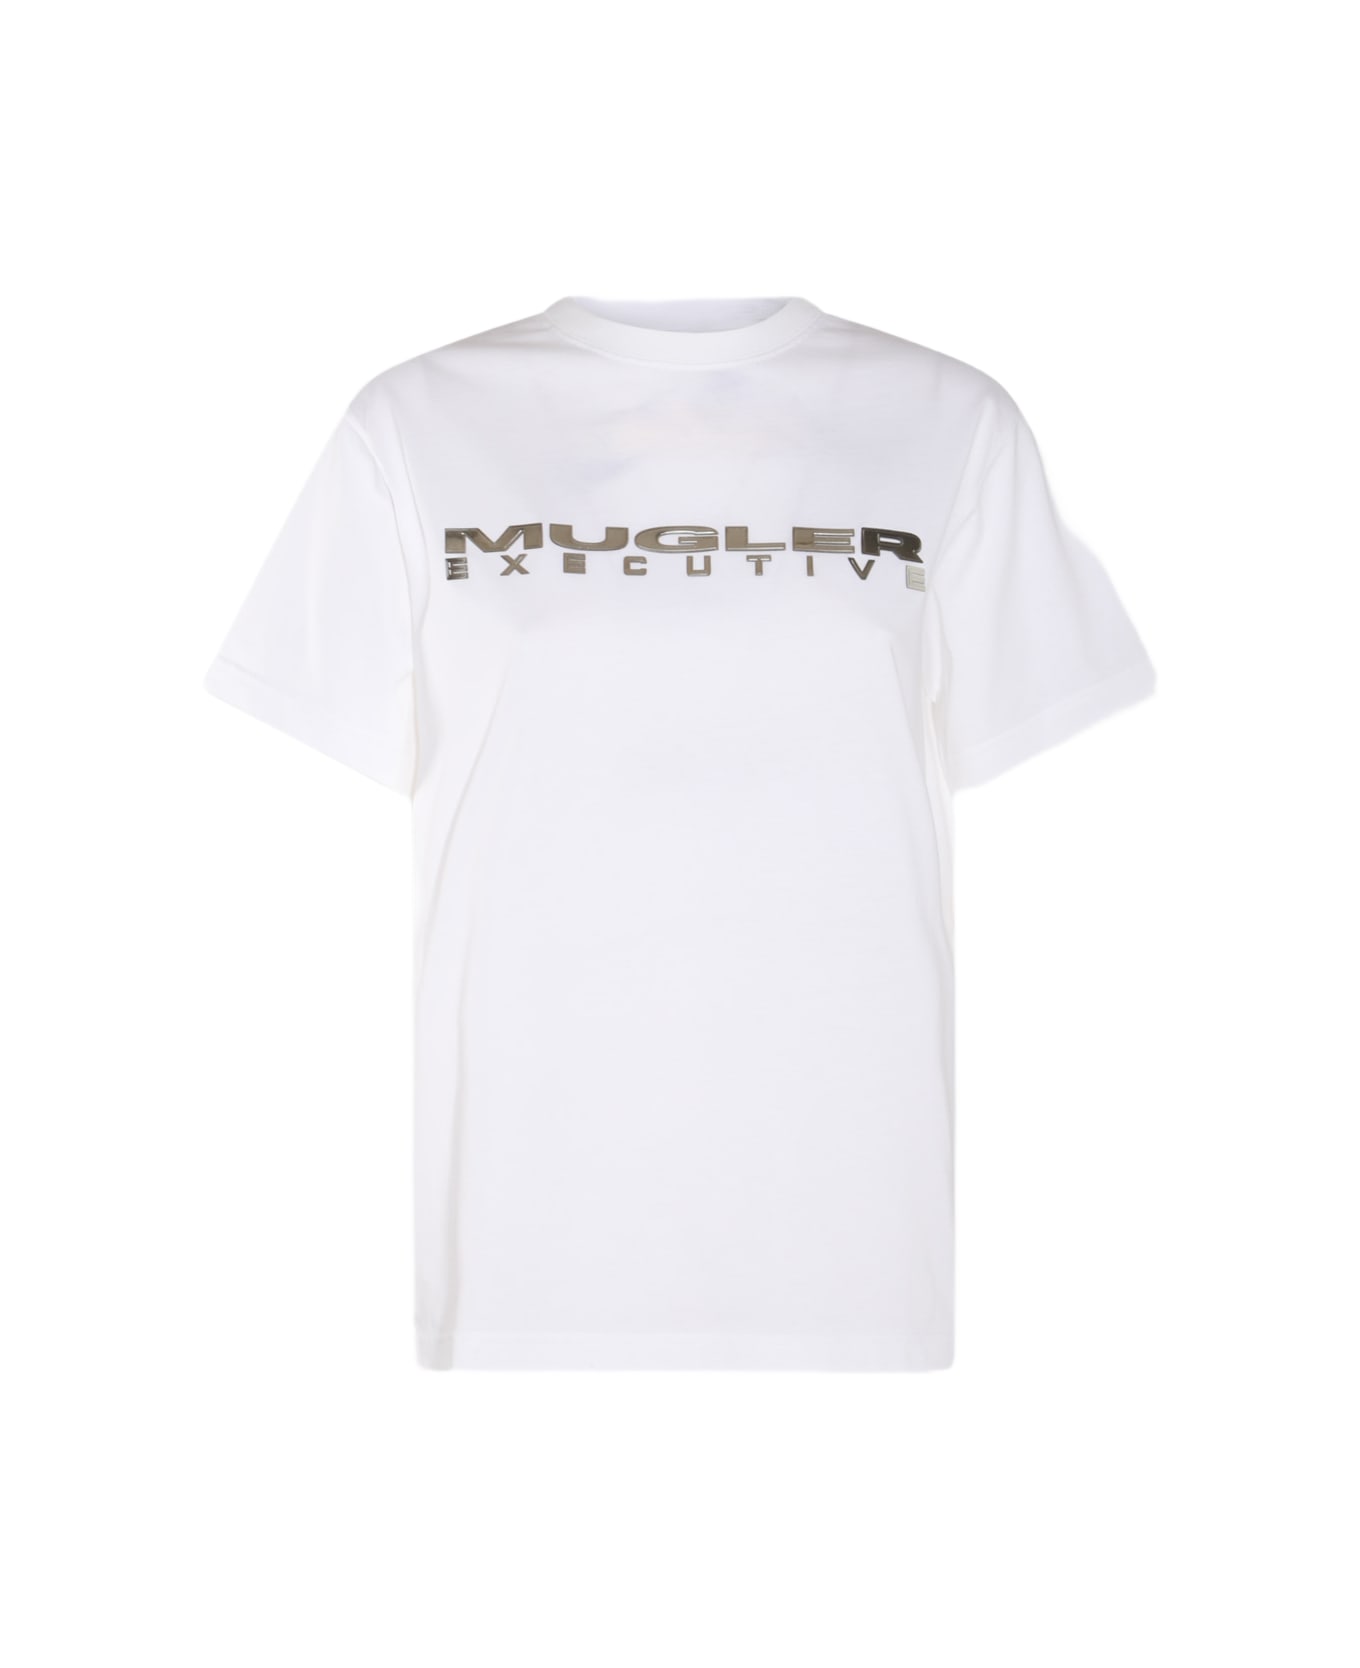 Mugler White Cotton T-shirt - WARM WHITE Tシャツ